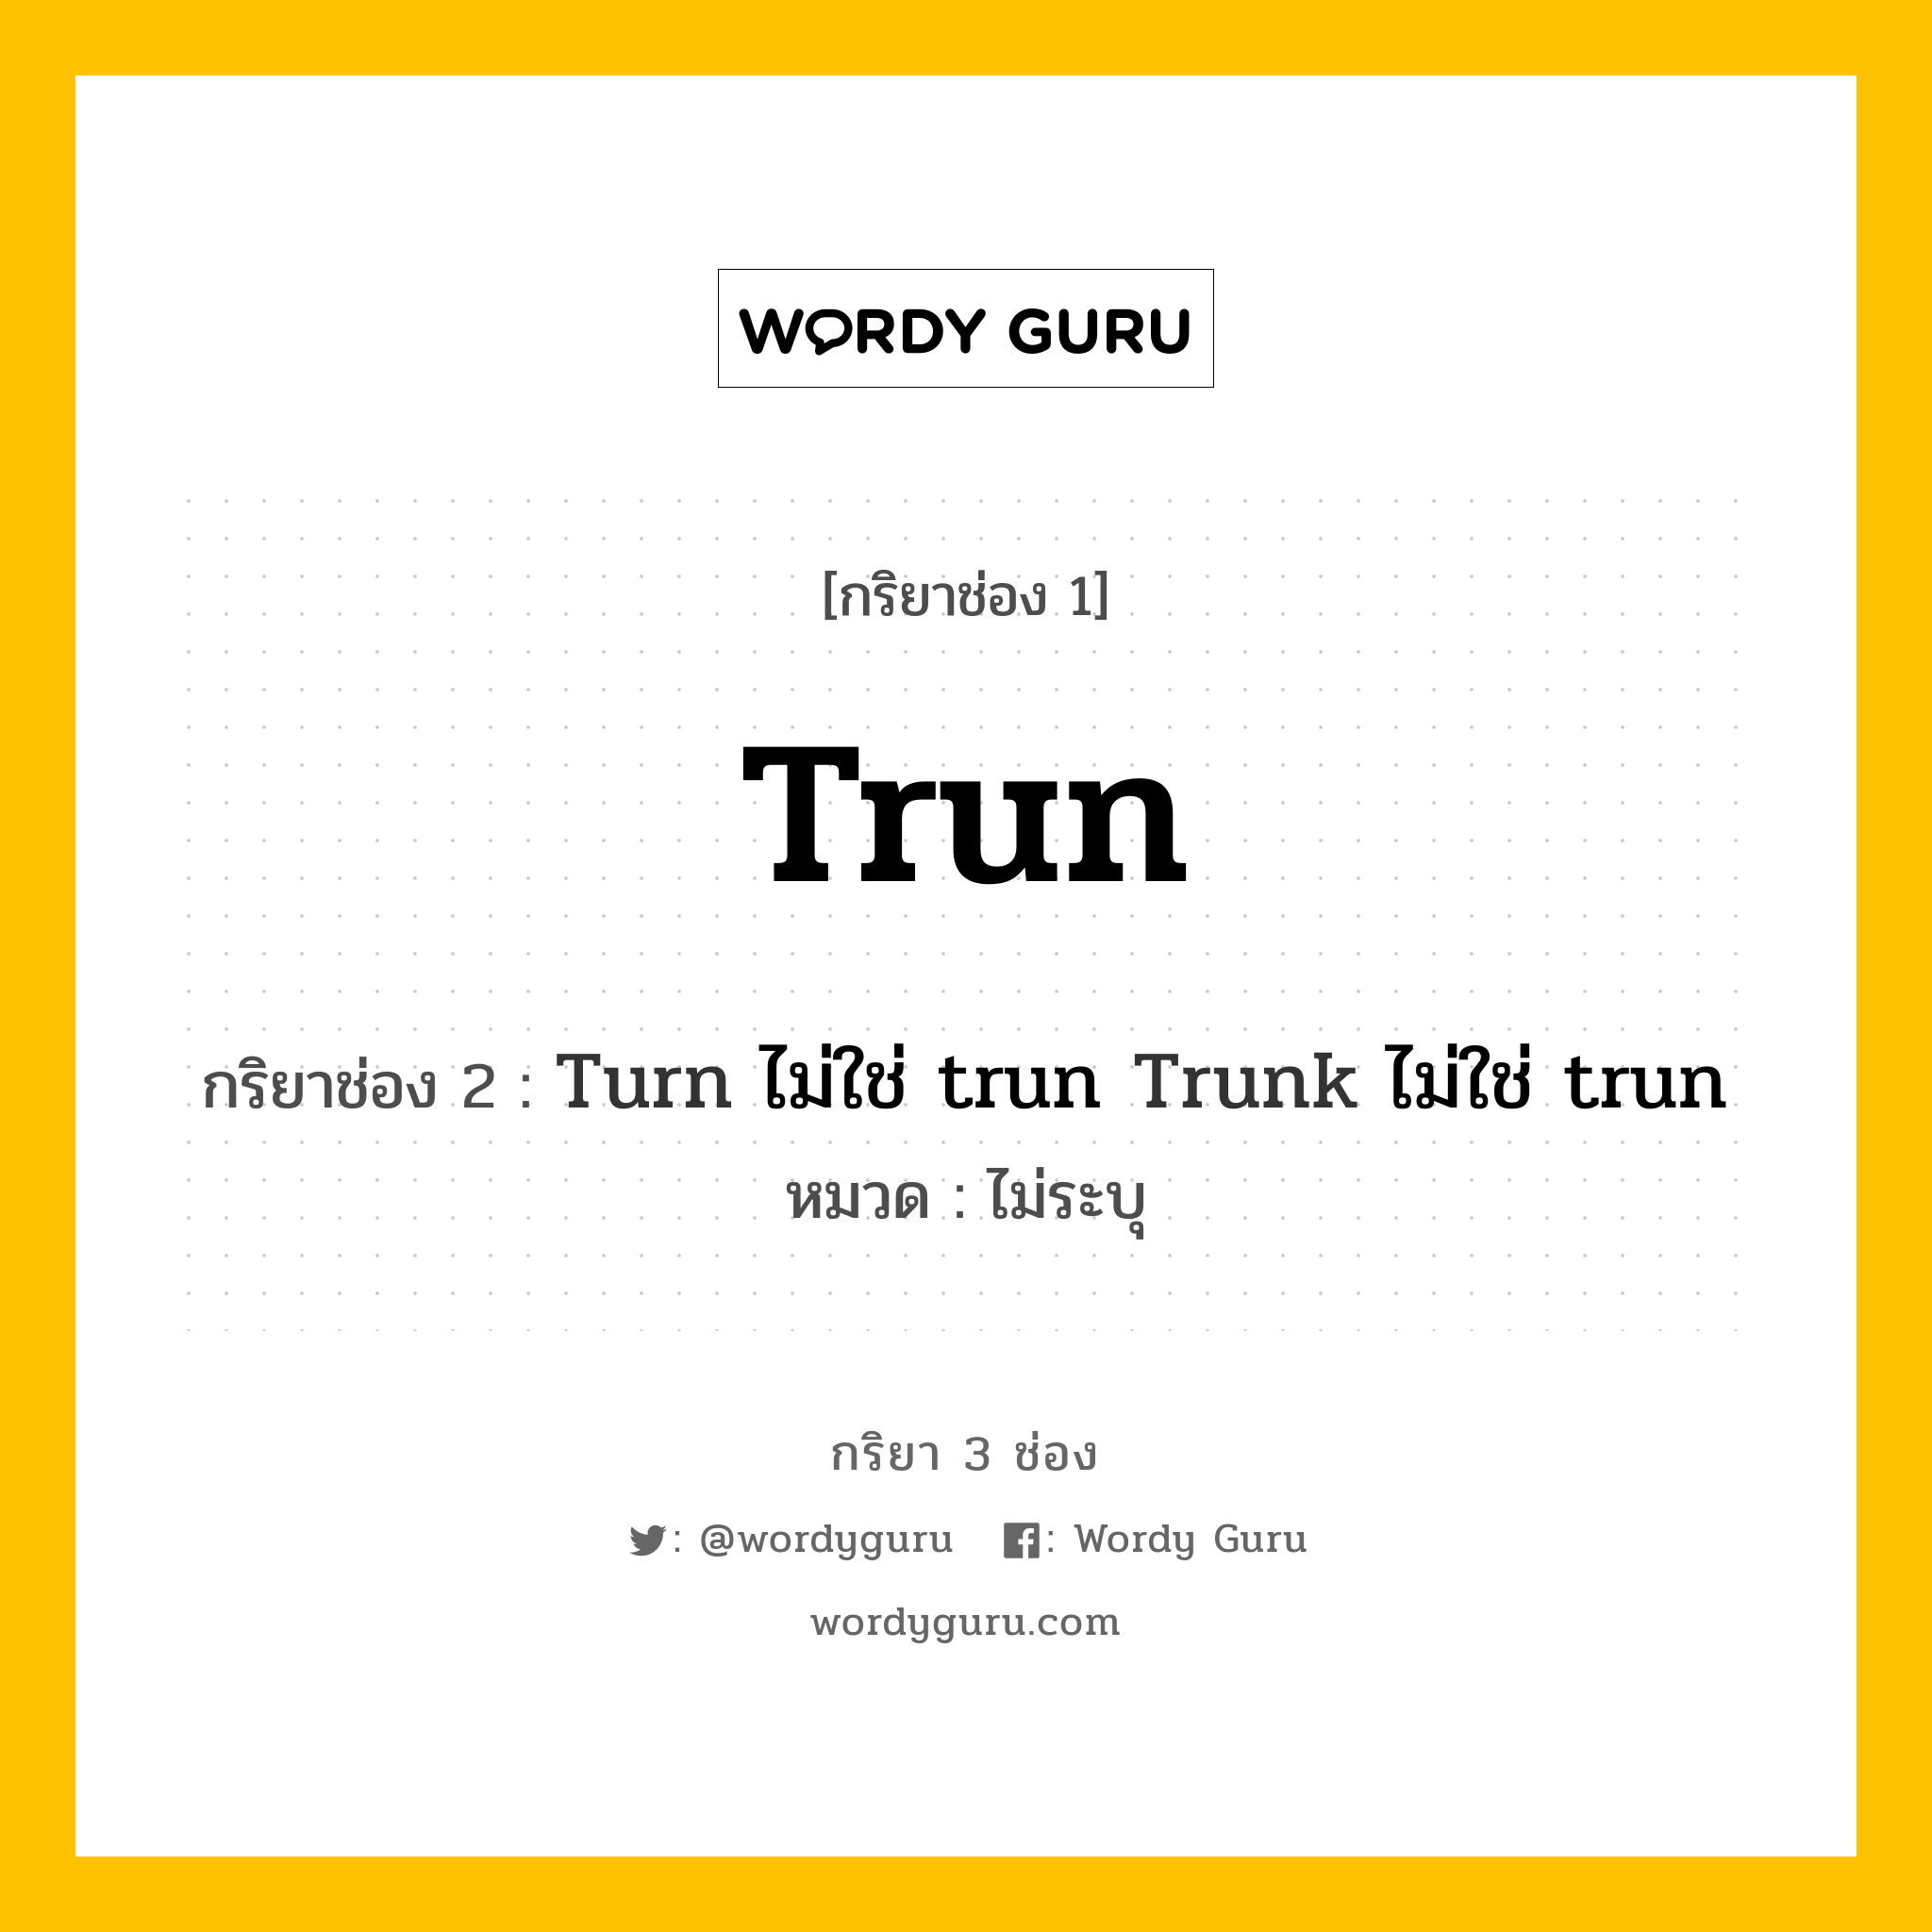 กริยา 3 ช่อง ของ Trun คืออะไร? มาดูคำอ่าน คำแปลกันเลย, กริยาช่อง 1 Trun กริยาช่อง 2 Turn ไม่ใช่ trun Trunk ไม่ใช่ trun หมวด ไม่ระบุ หมวด ไม่ระบุ